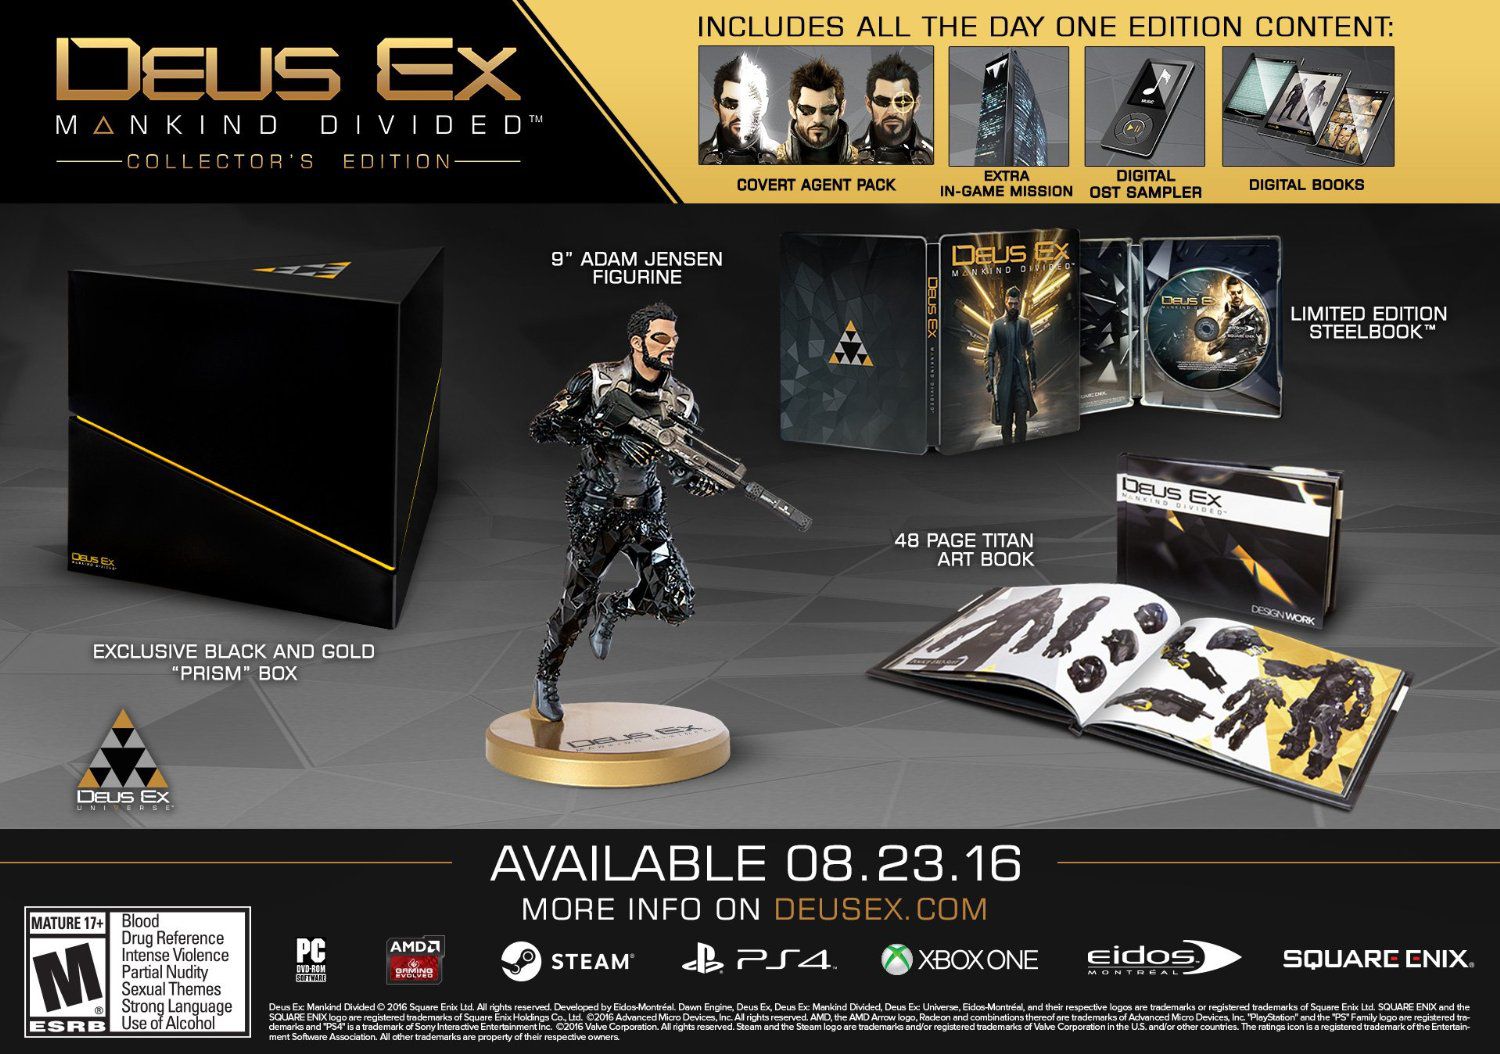 Deus Ex: Mankind Divided - Xbox One